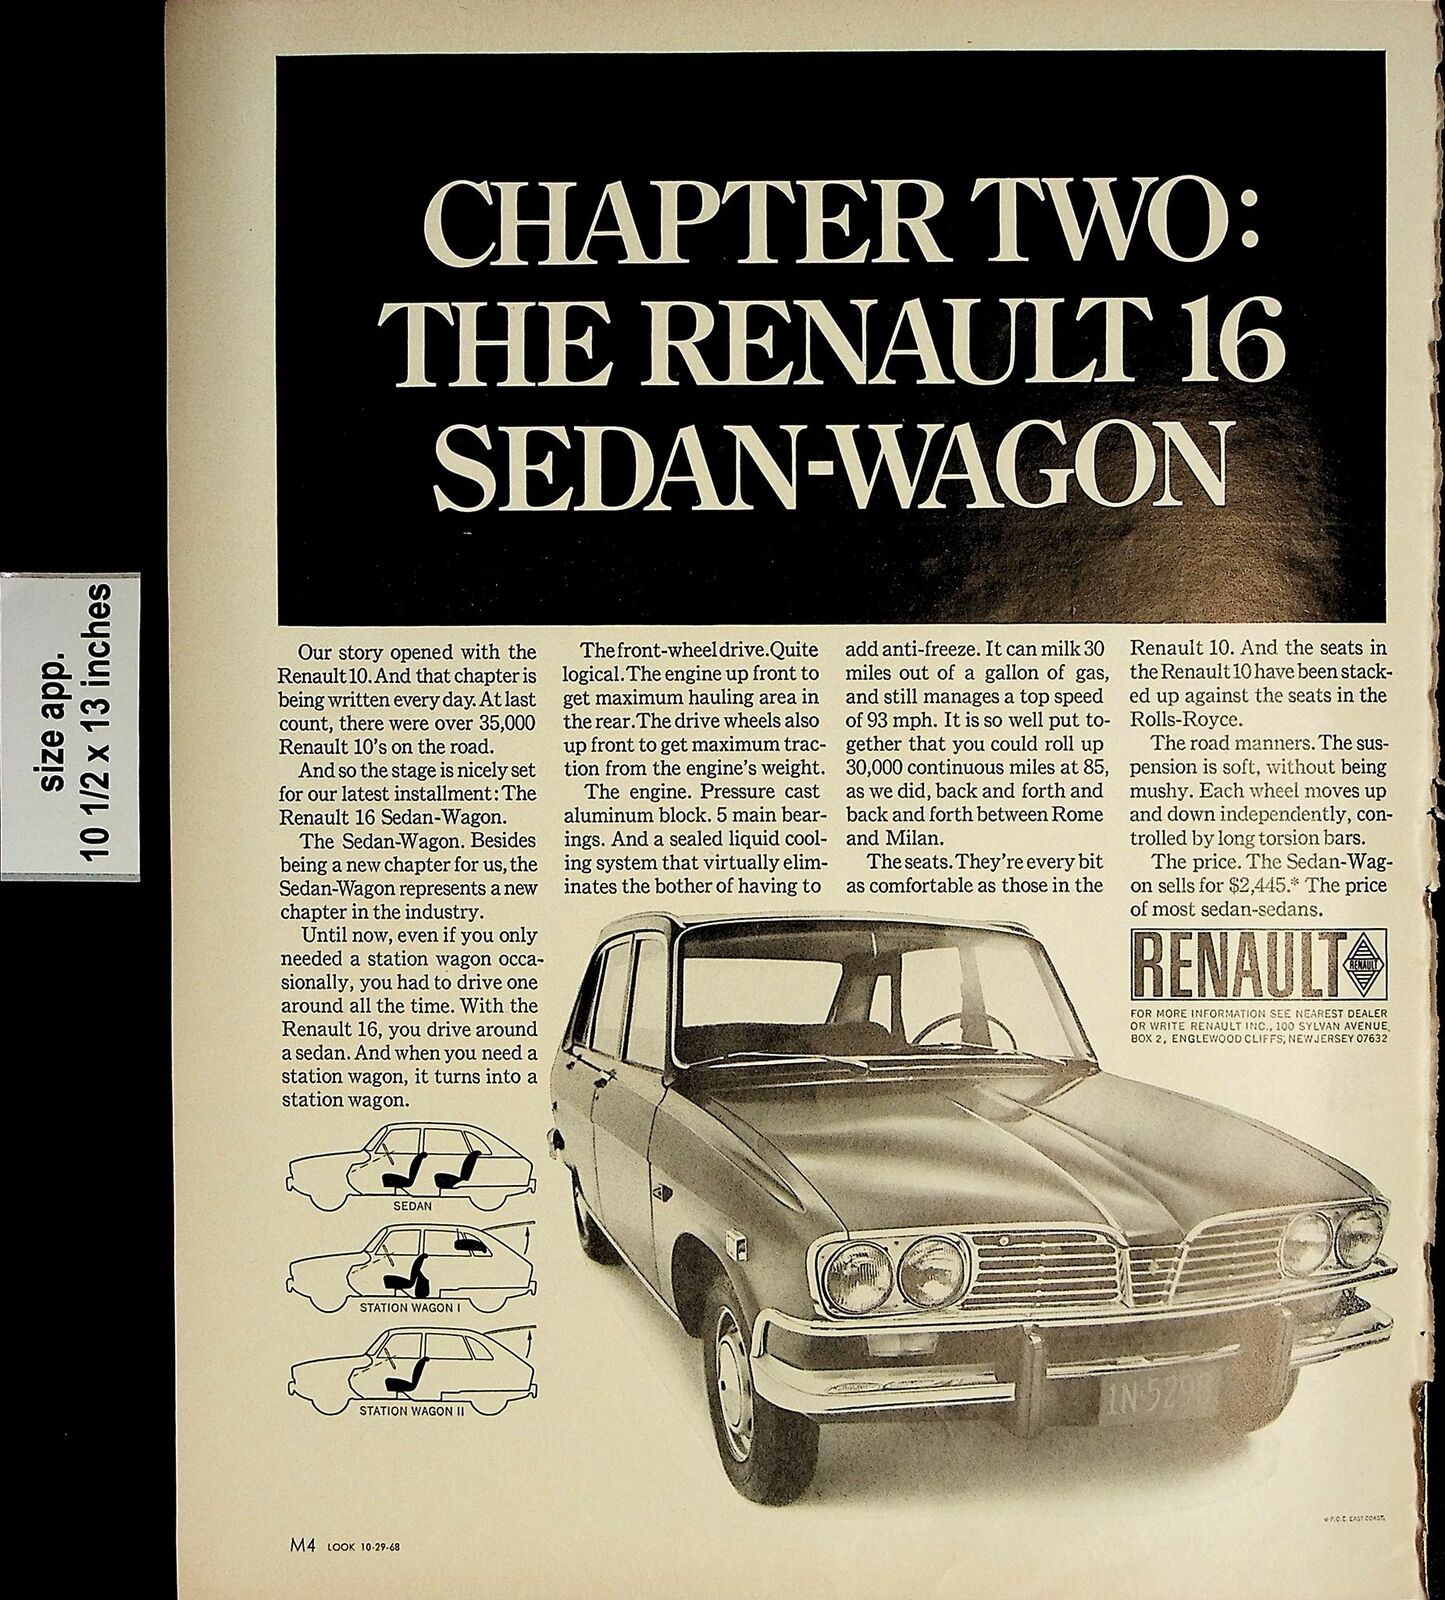 1968 Chapter Two Renault Sedan-Wagon Vintage Print Ad 5218